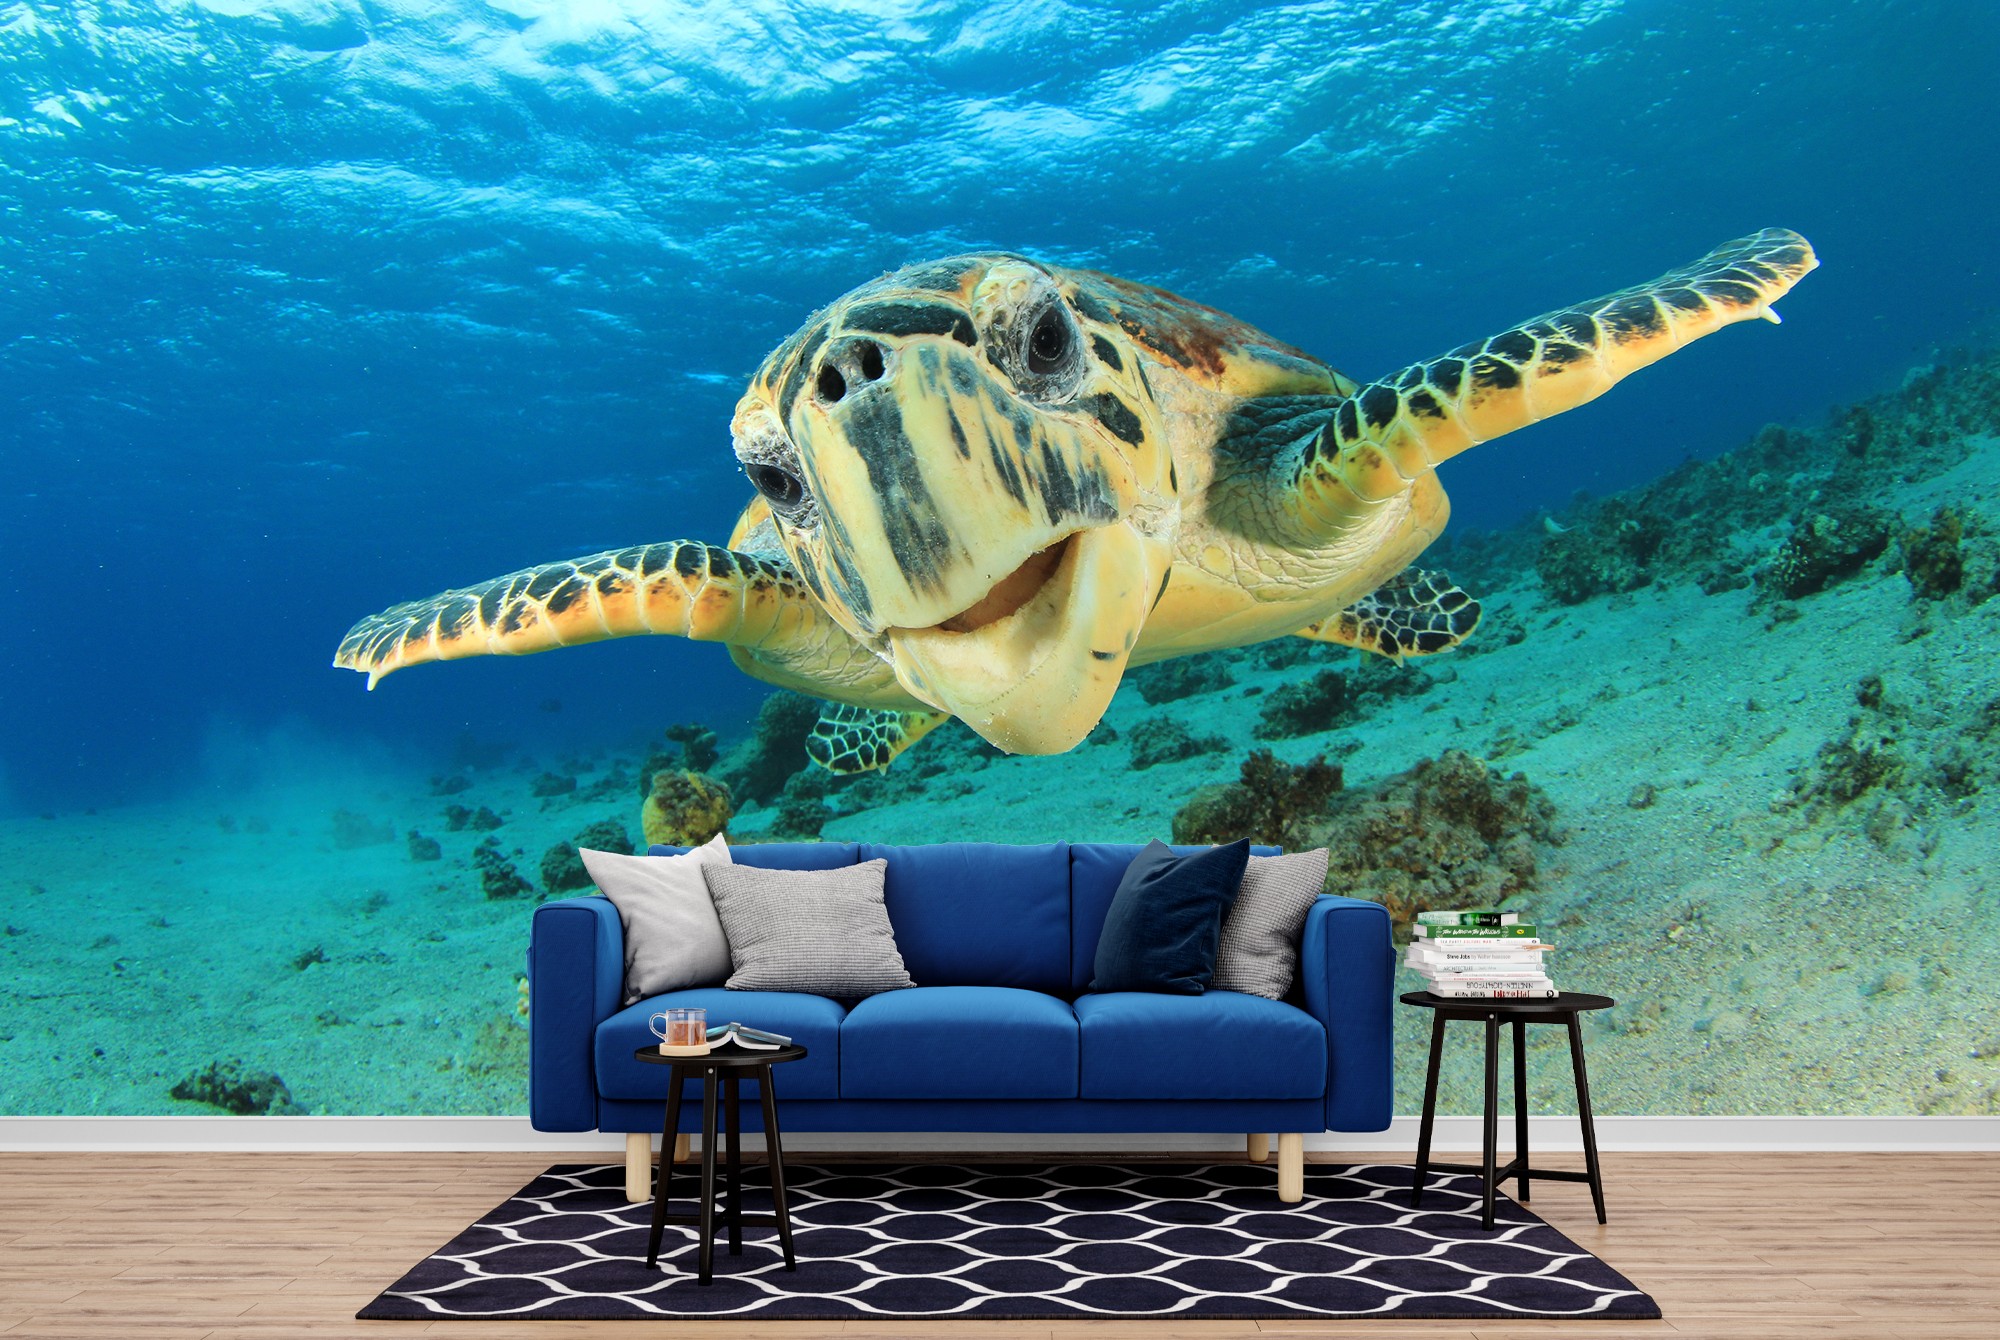 3D Turtles Sea 54 Wallpaper Murals Wall Print Wallpaper Mural AJ WALLPAPER UK